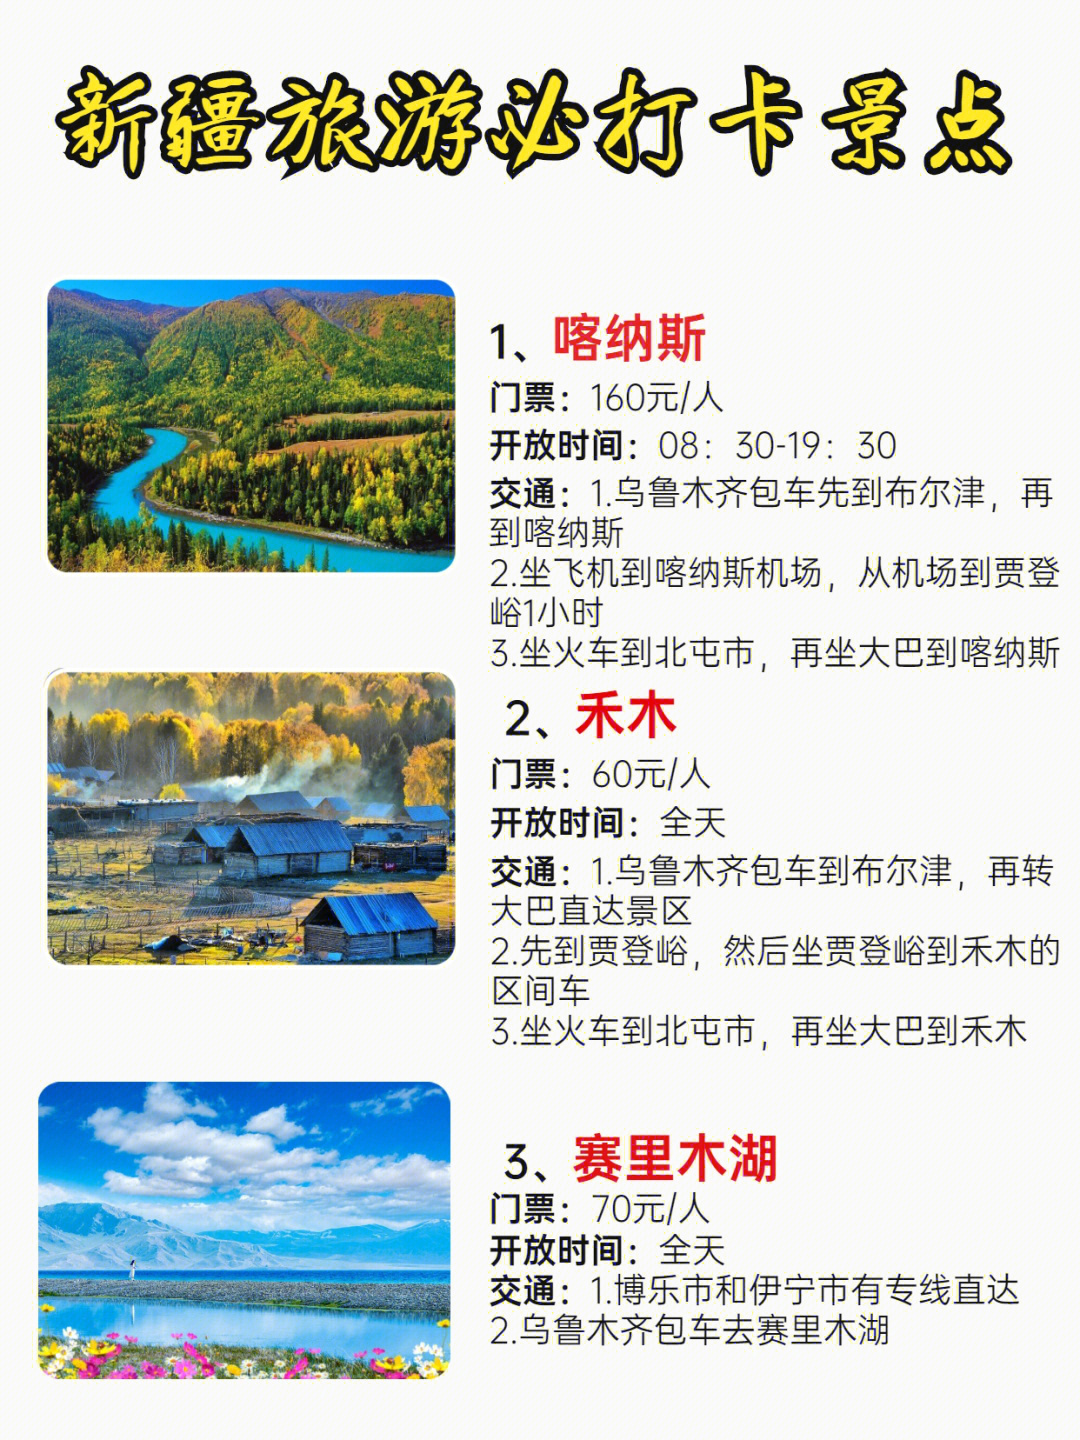 新疆5a景区分布图片